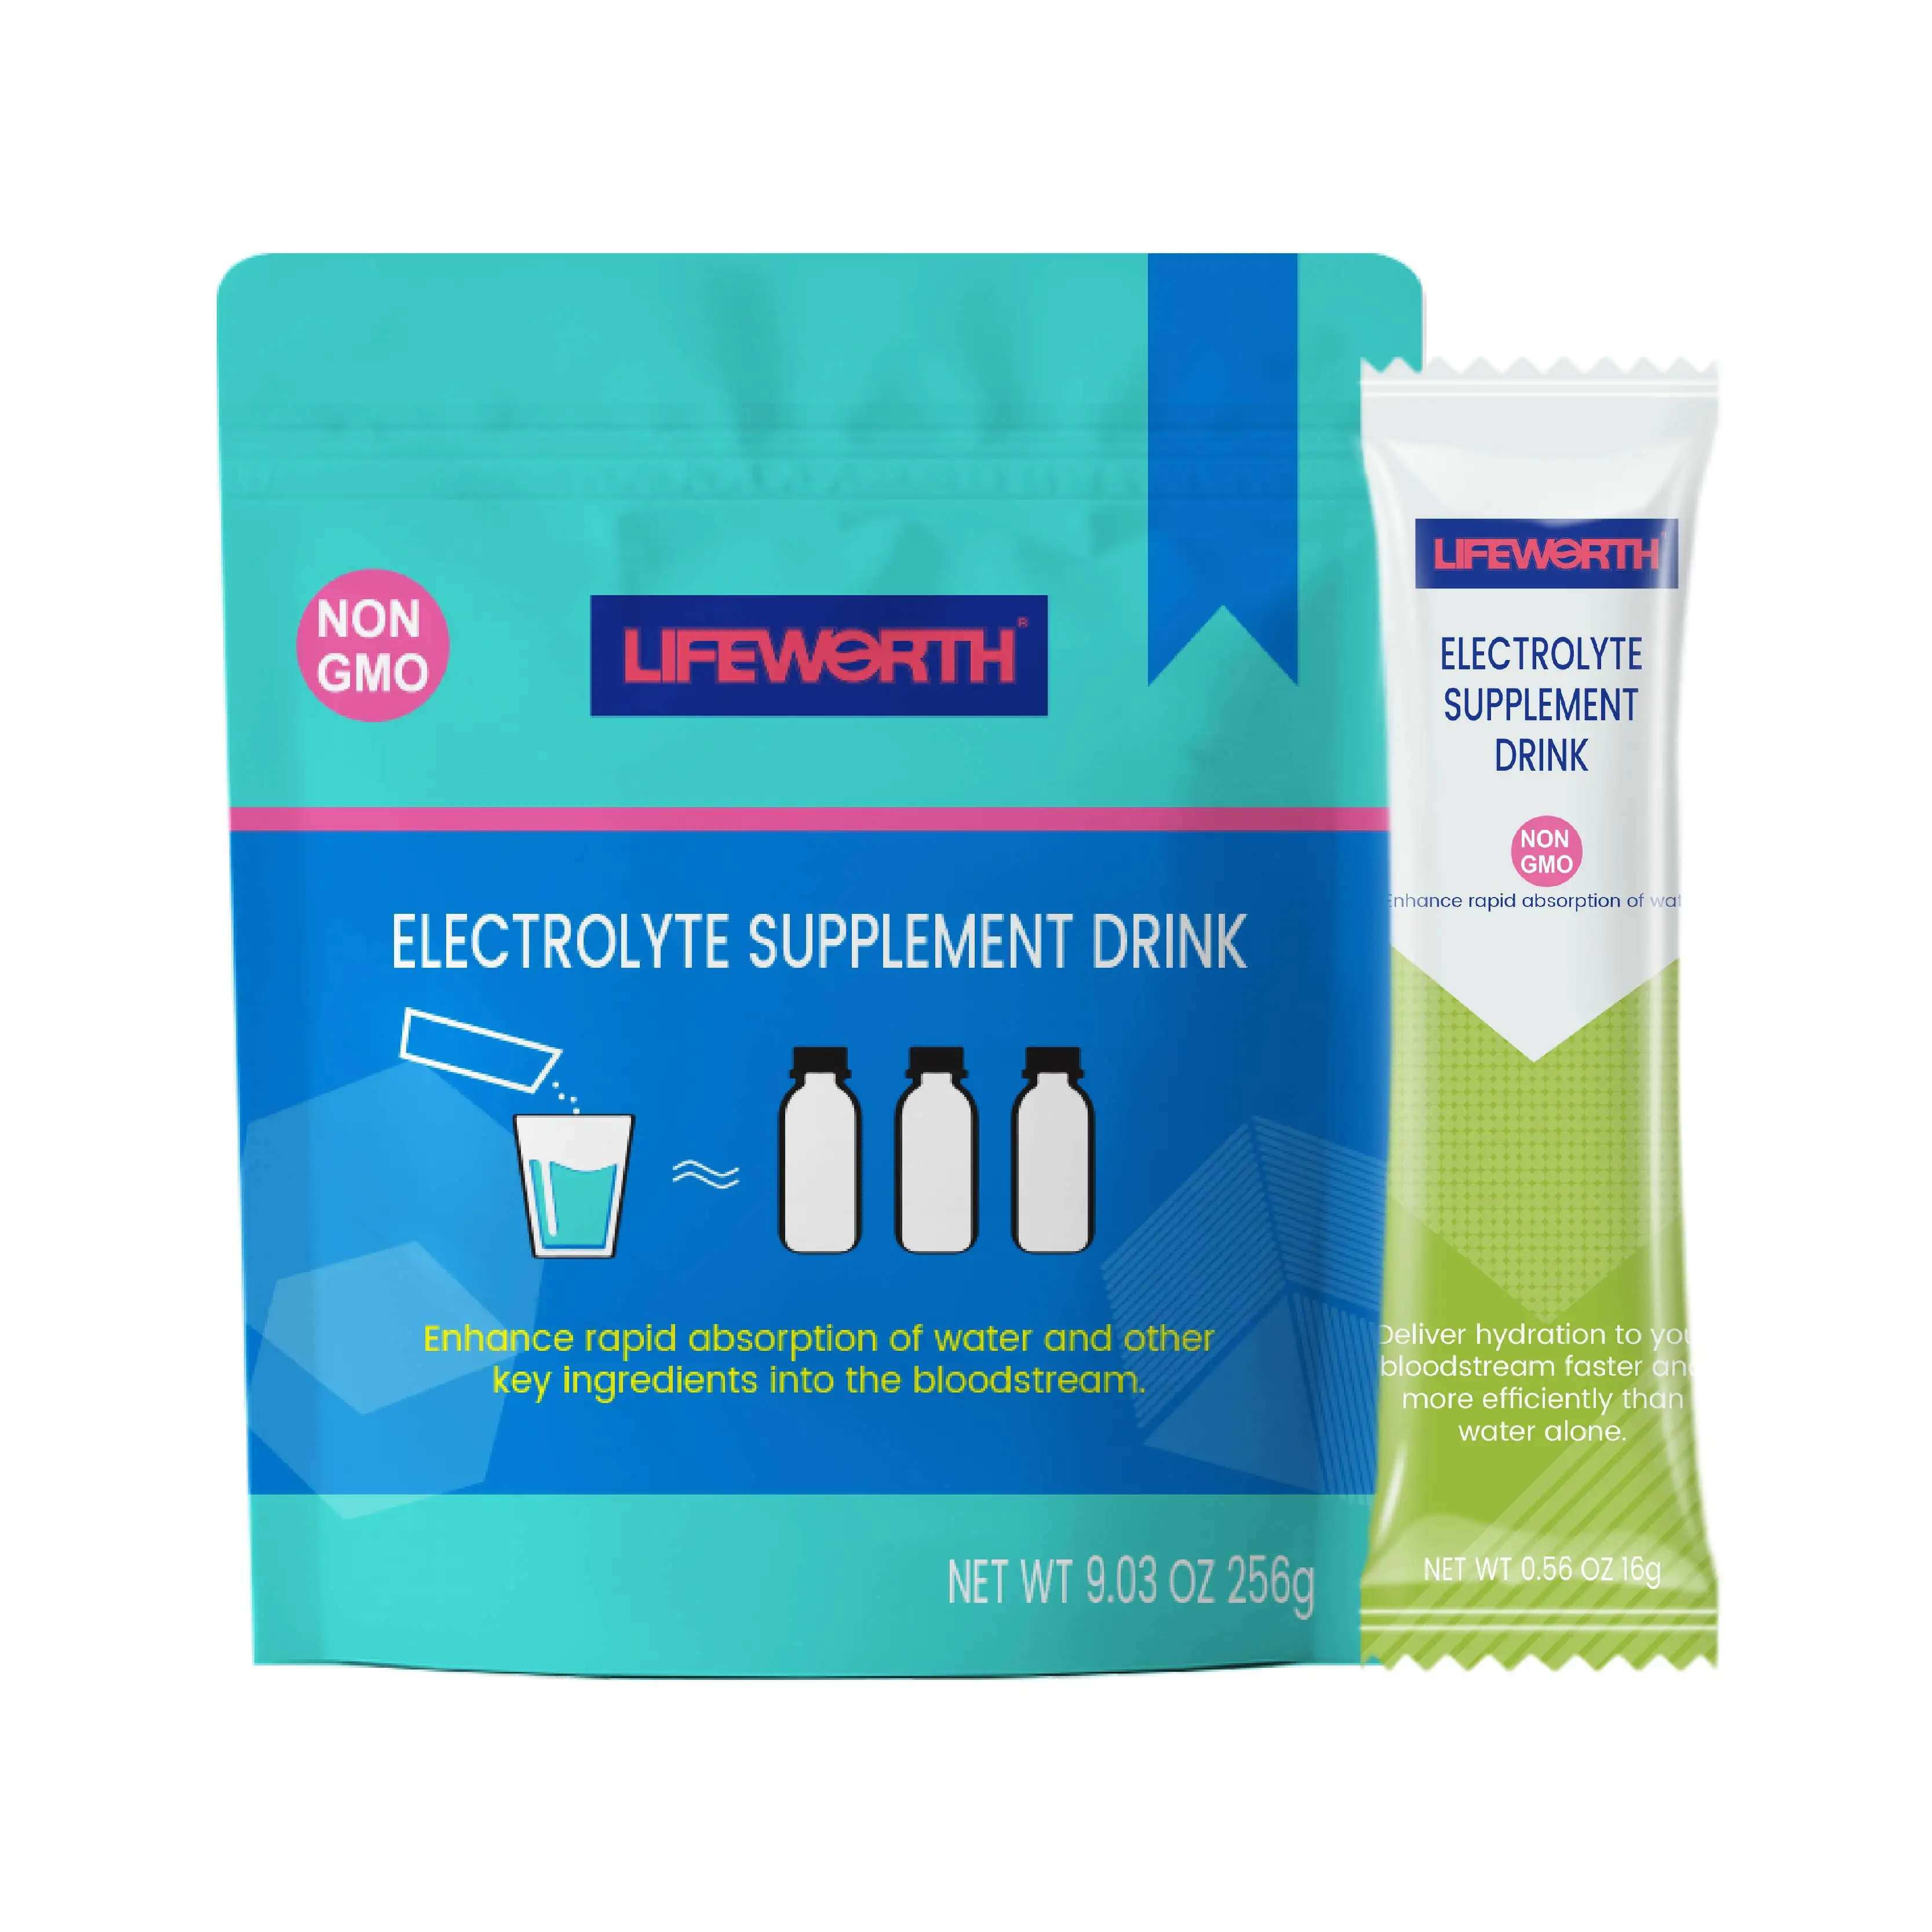 Lifeworth limon ön egzersiz vitamin b kompleks takviyesi enerji içeceği elektrolit tozu tedarikçisi